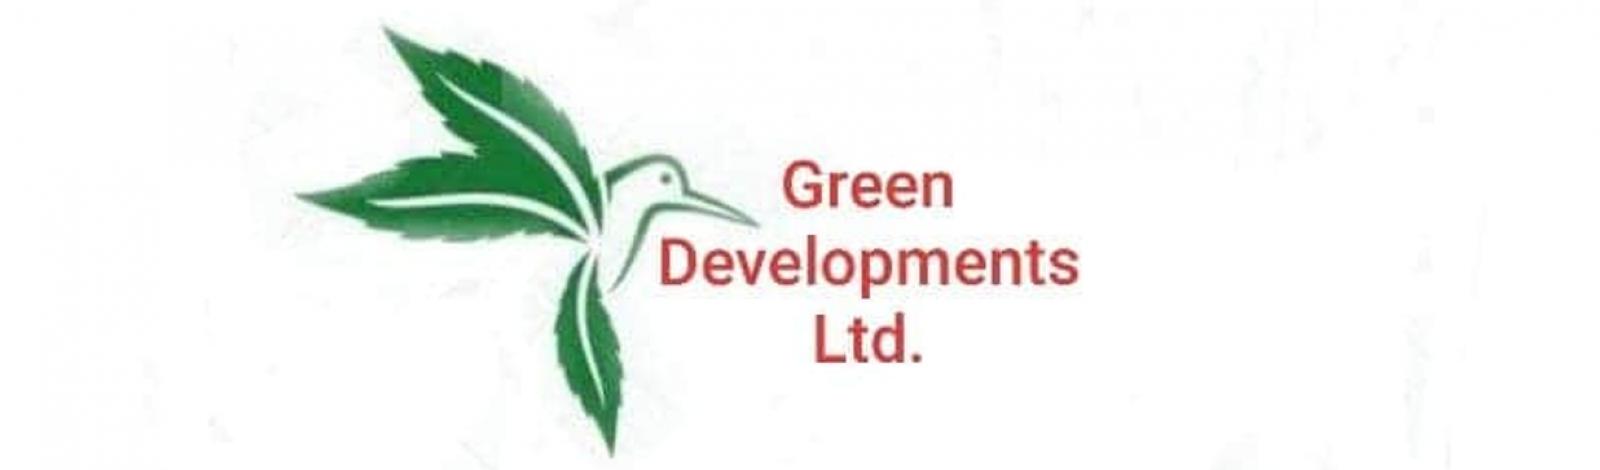 Green Development Ltd   banner